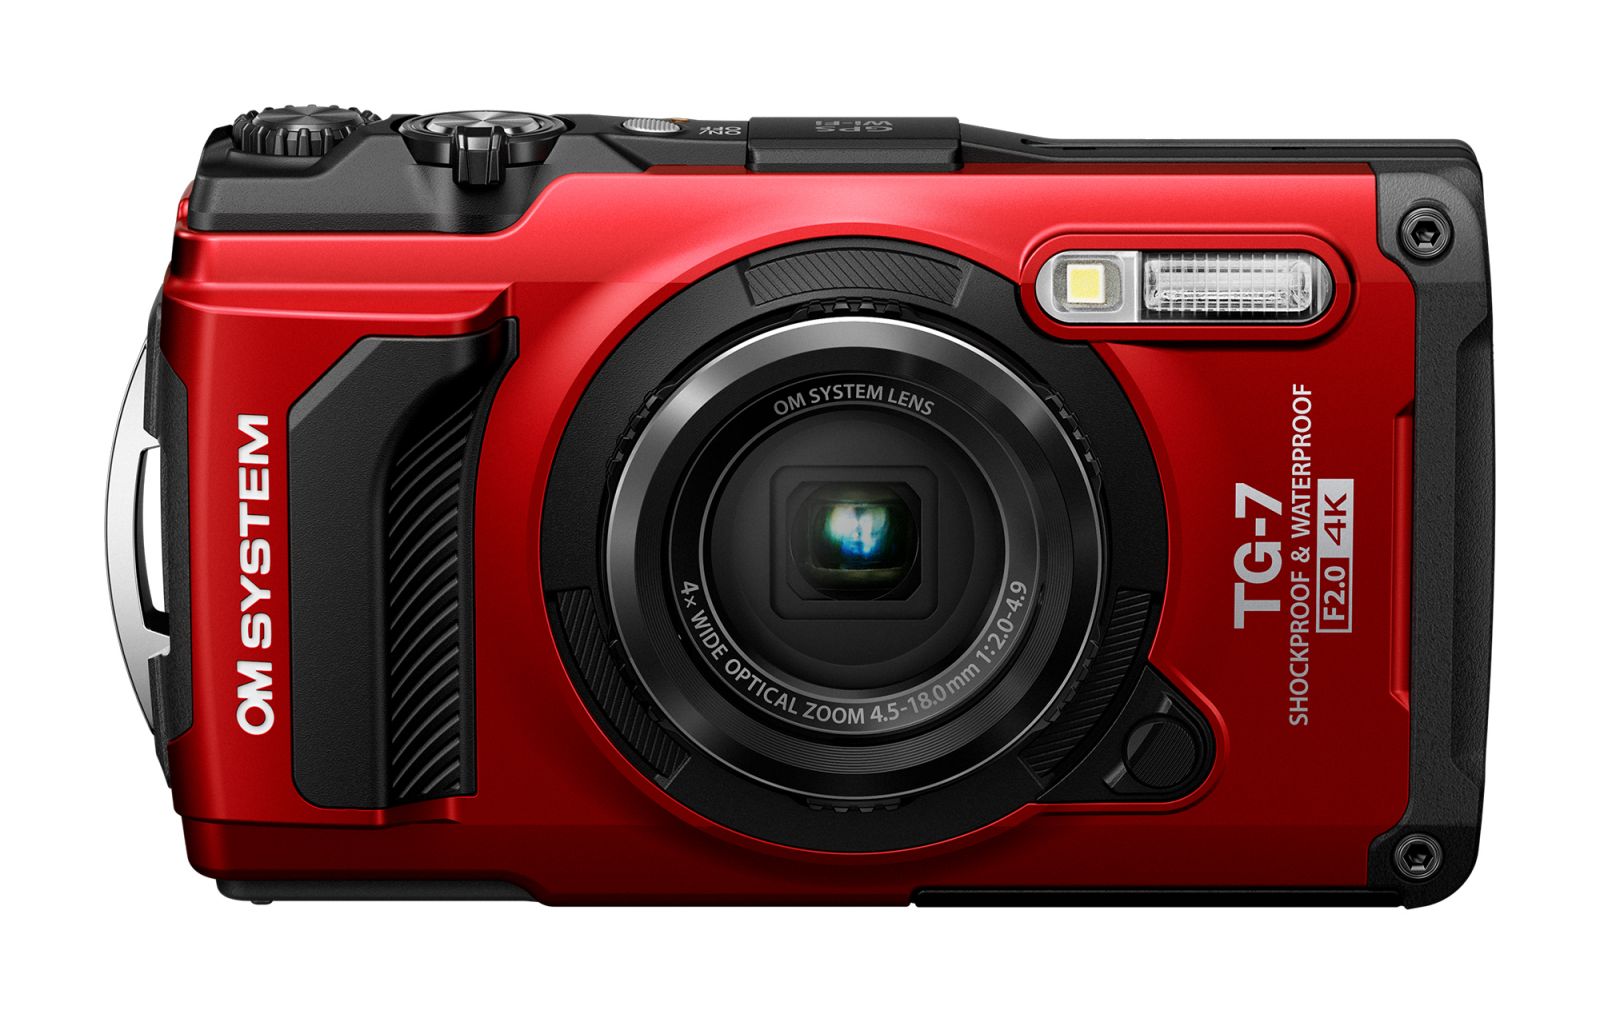 Digitální fotoaparát OM SYSTEM TG-7 red